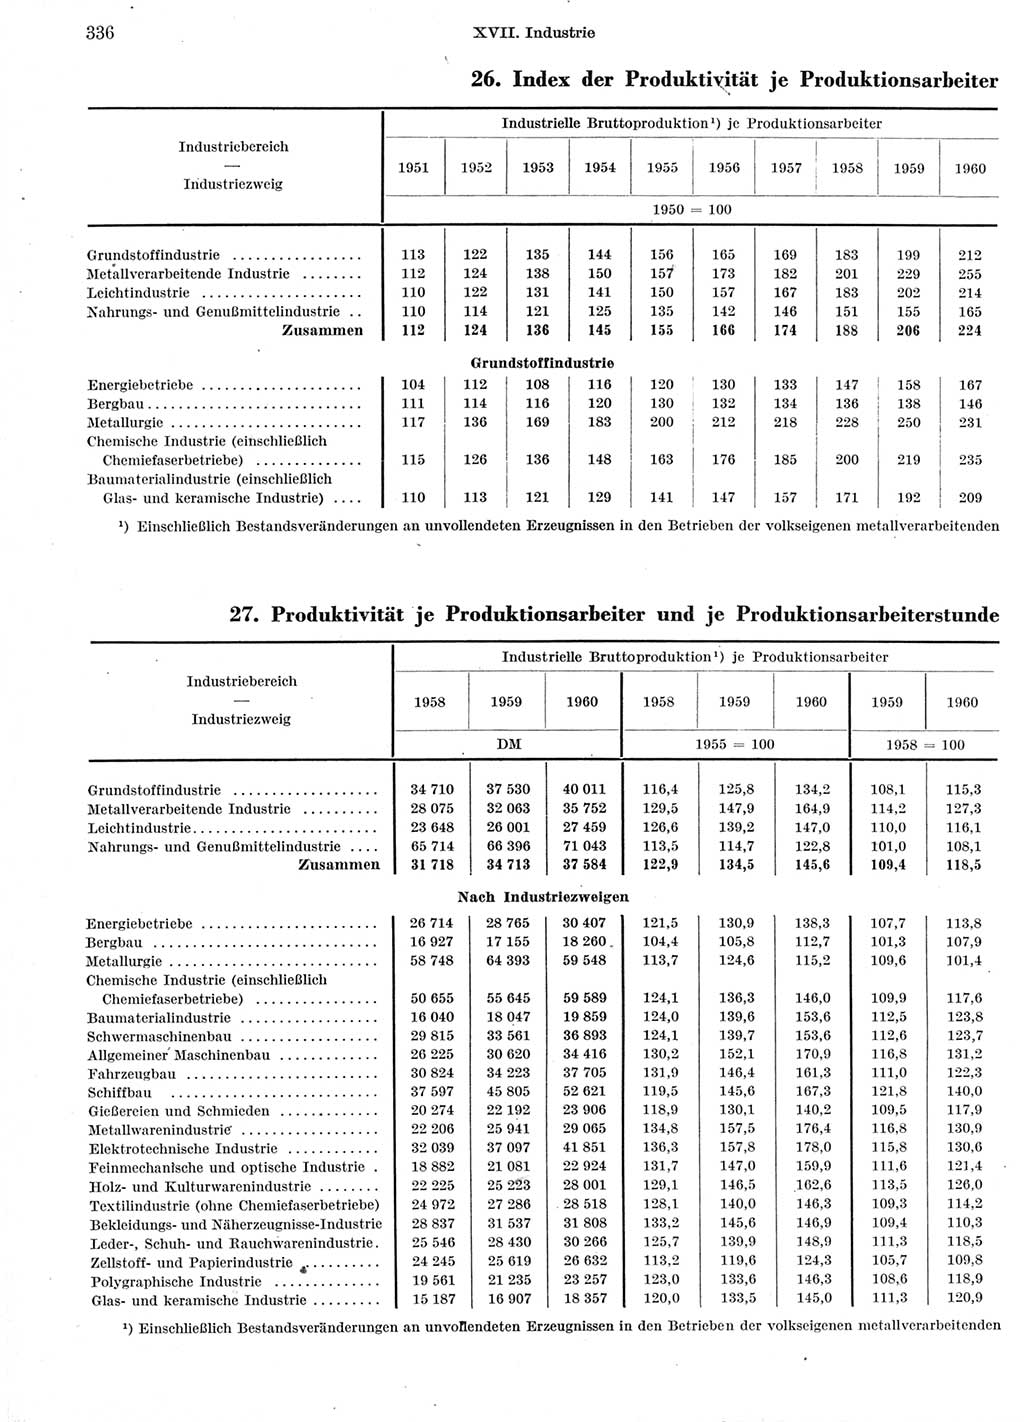 Statistisches Jahrbuch der Deutschen Demokratischen Republik (DDR) 1960-1961, Seite 336 (Stat. Jb. DDR 1960-1961, S. 336)